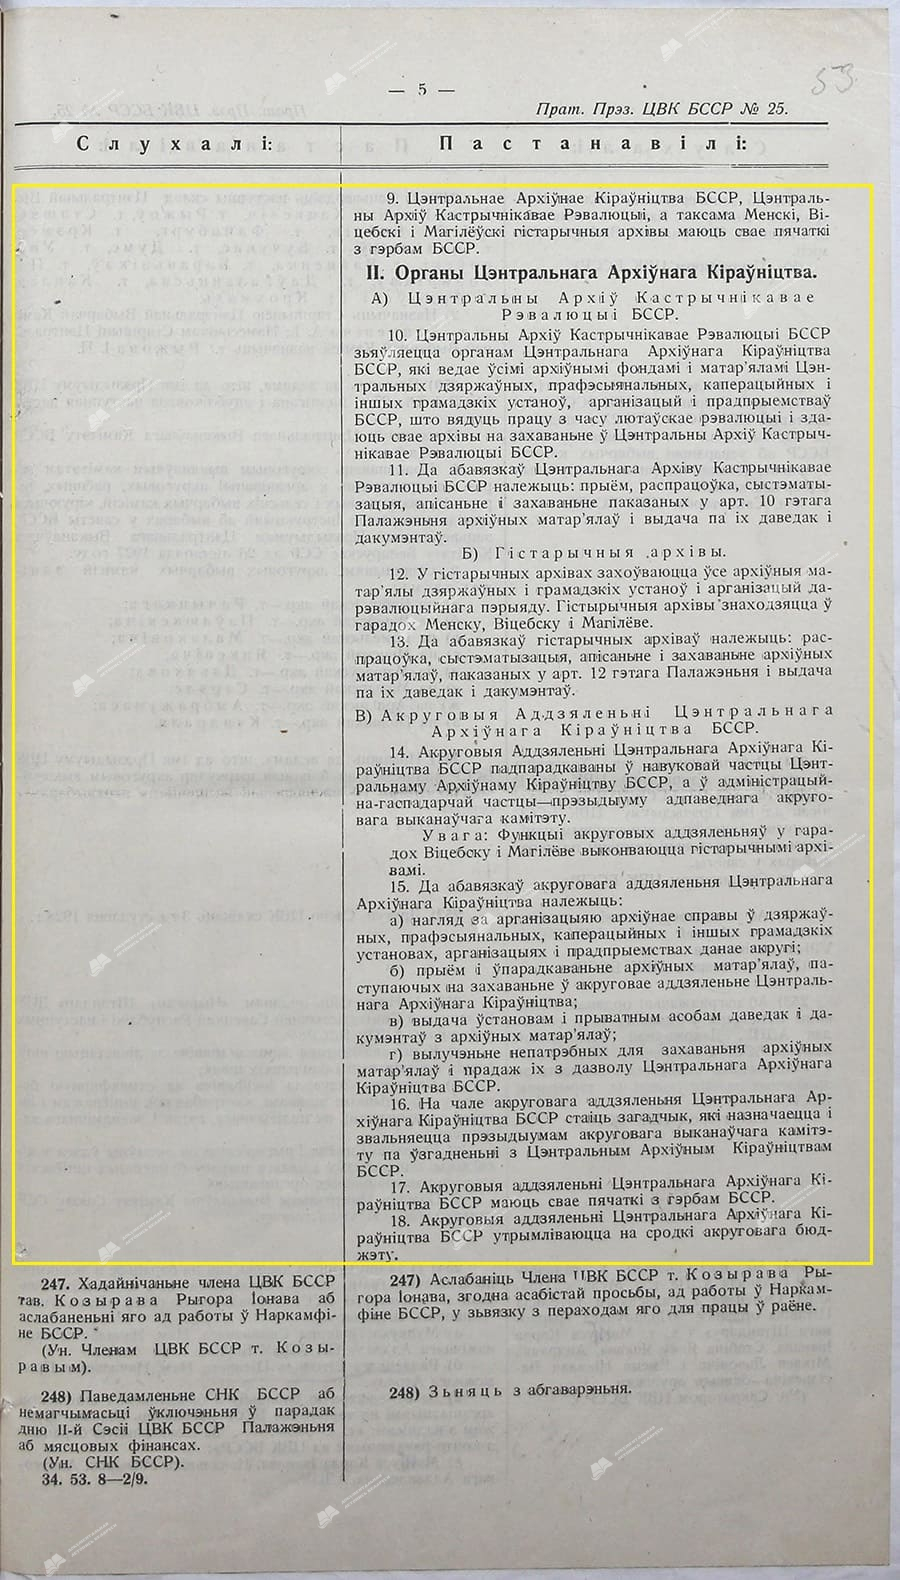 Положения о Центральном архивном управлении БССР и его органах-стр. 1